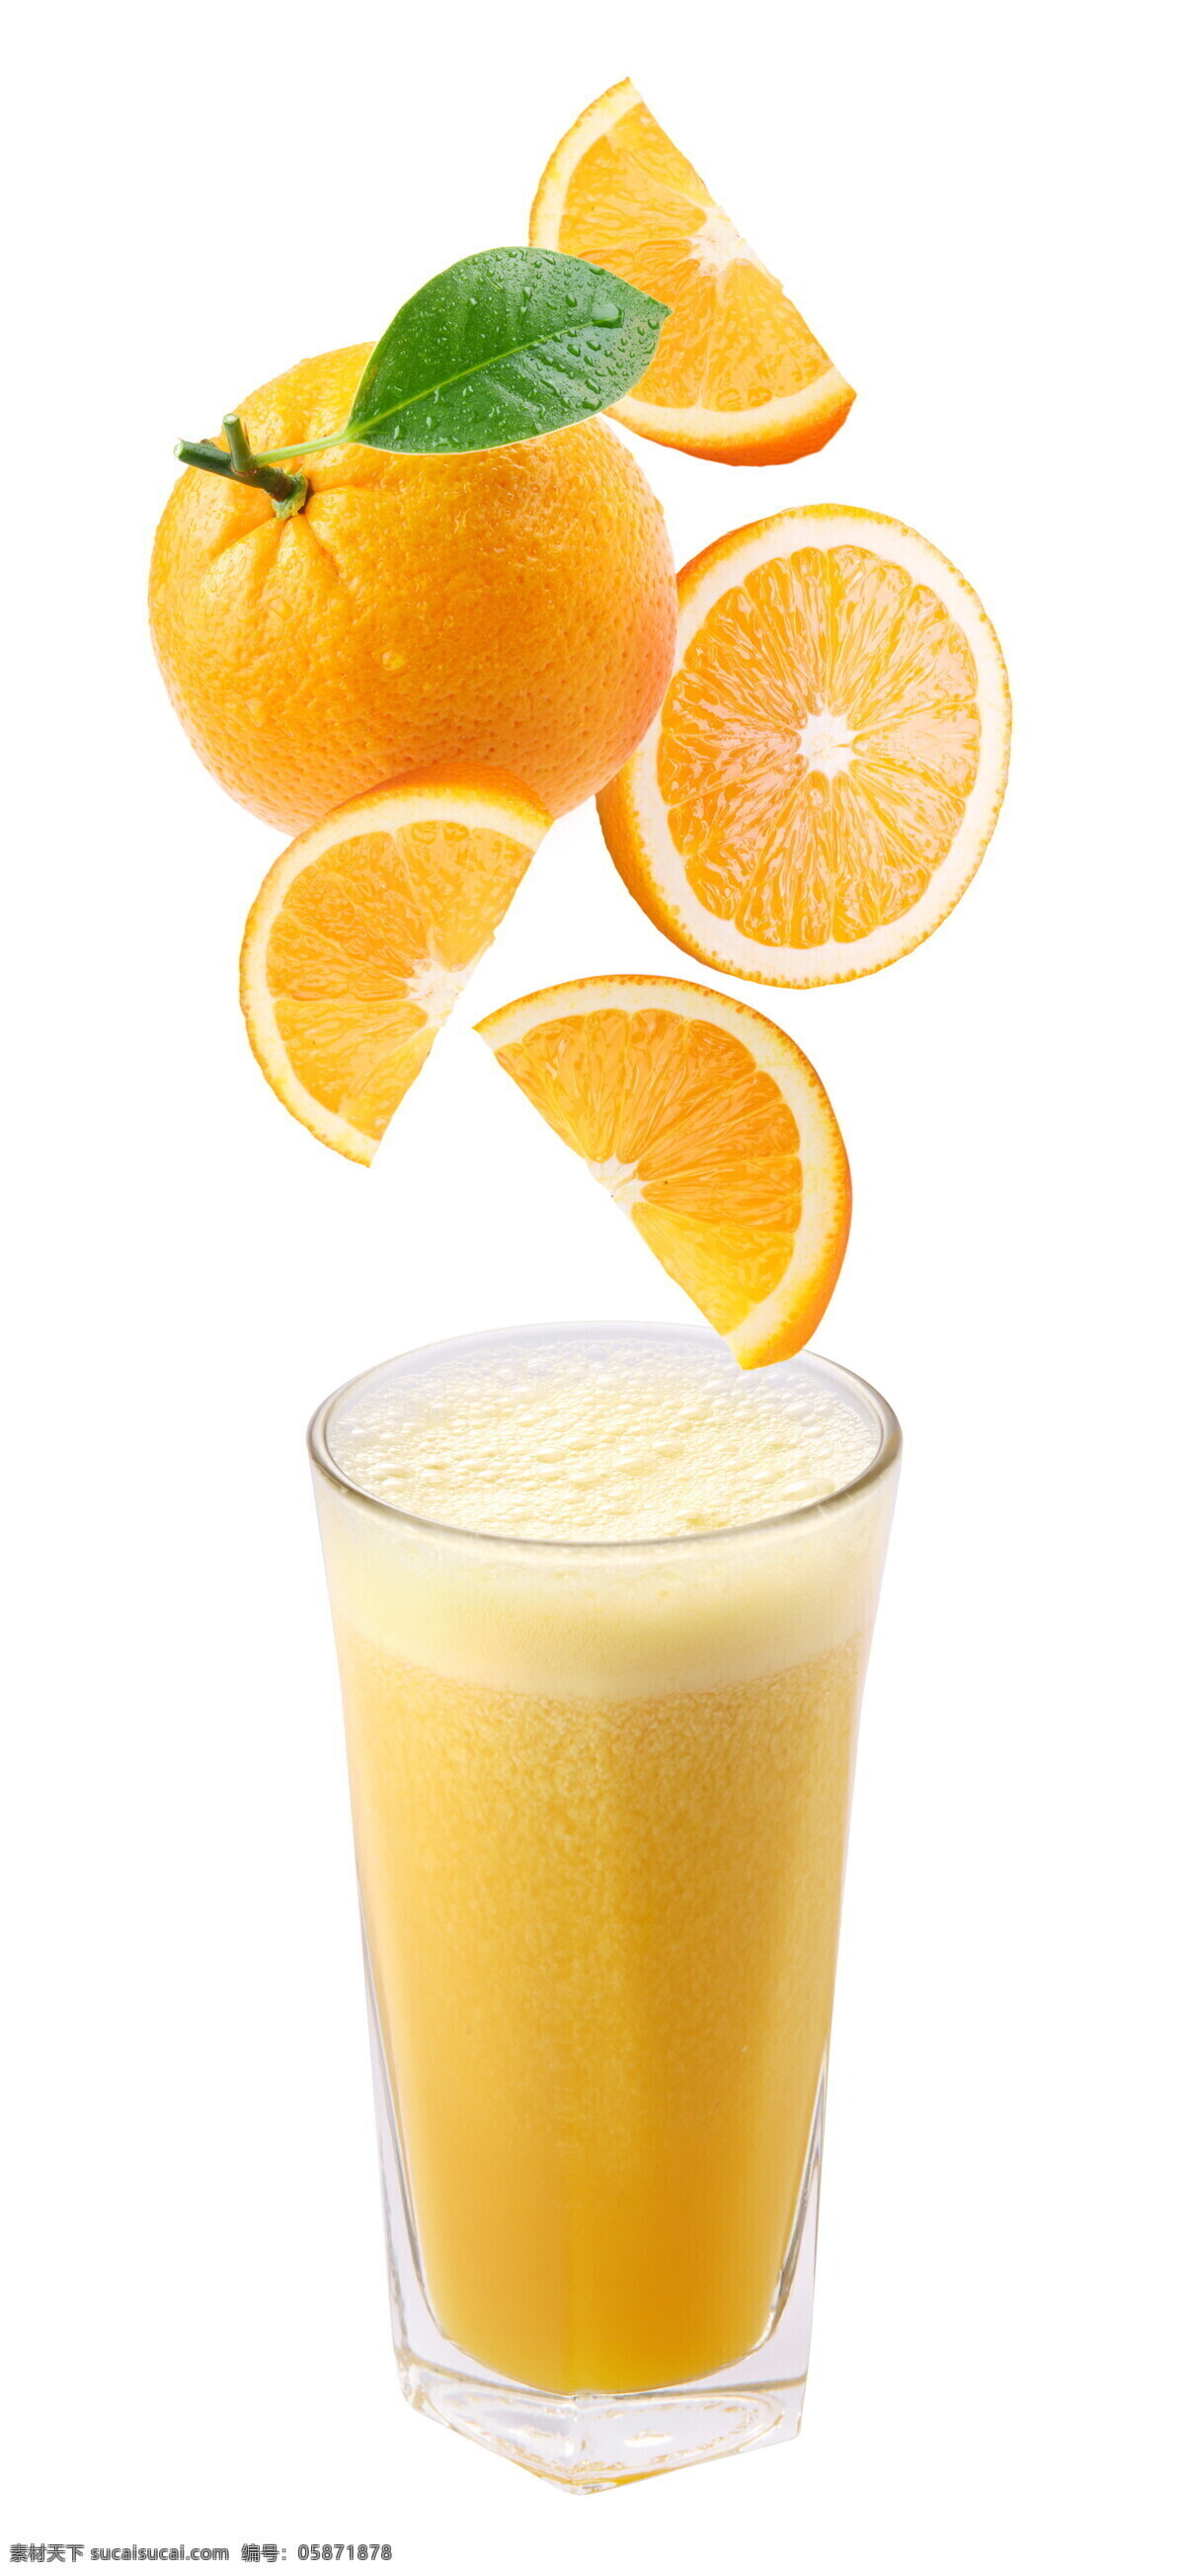 新鲜果汁 水果 水果汁 橙汁 西红柿 猕猴桃 美食图片 橙子 苹果 苹果汁 生物世界 食物高清图片 生活百科 餐饮美食